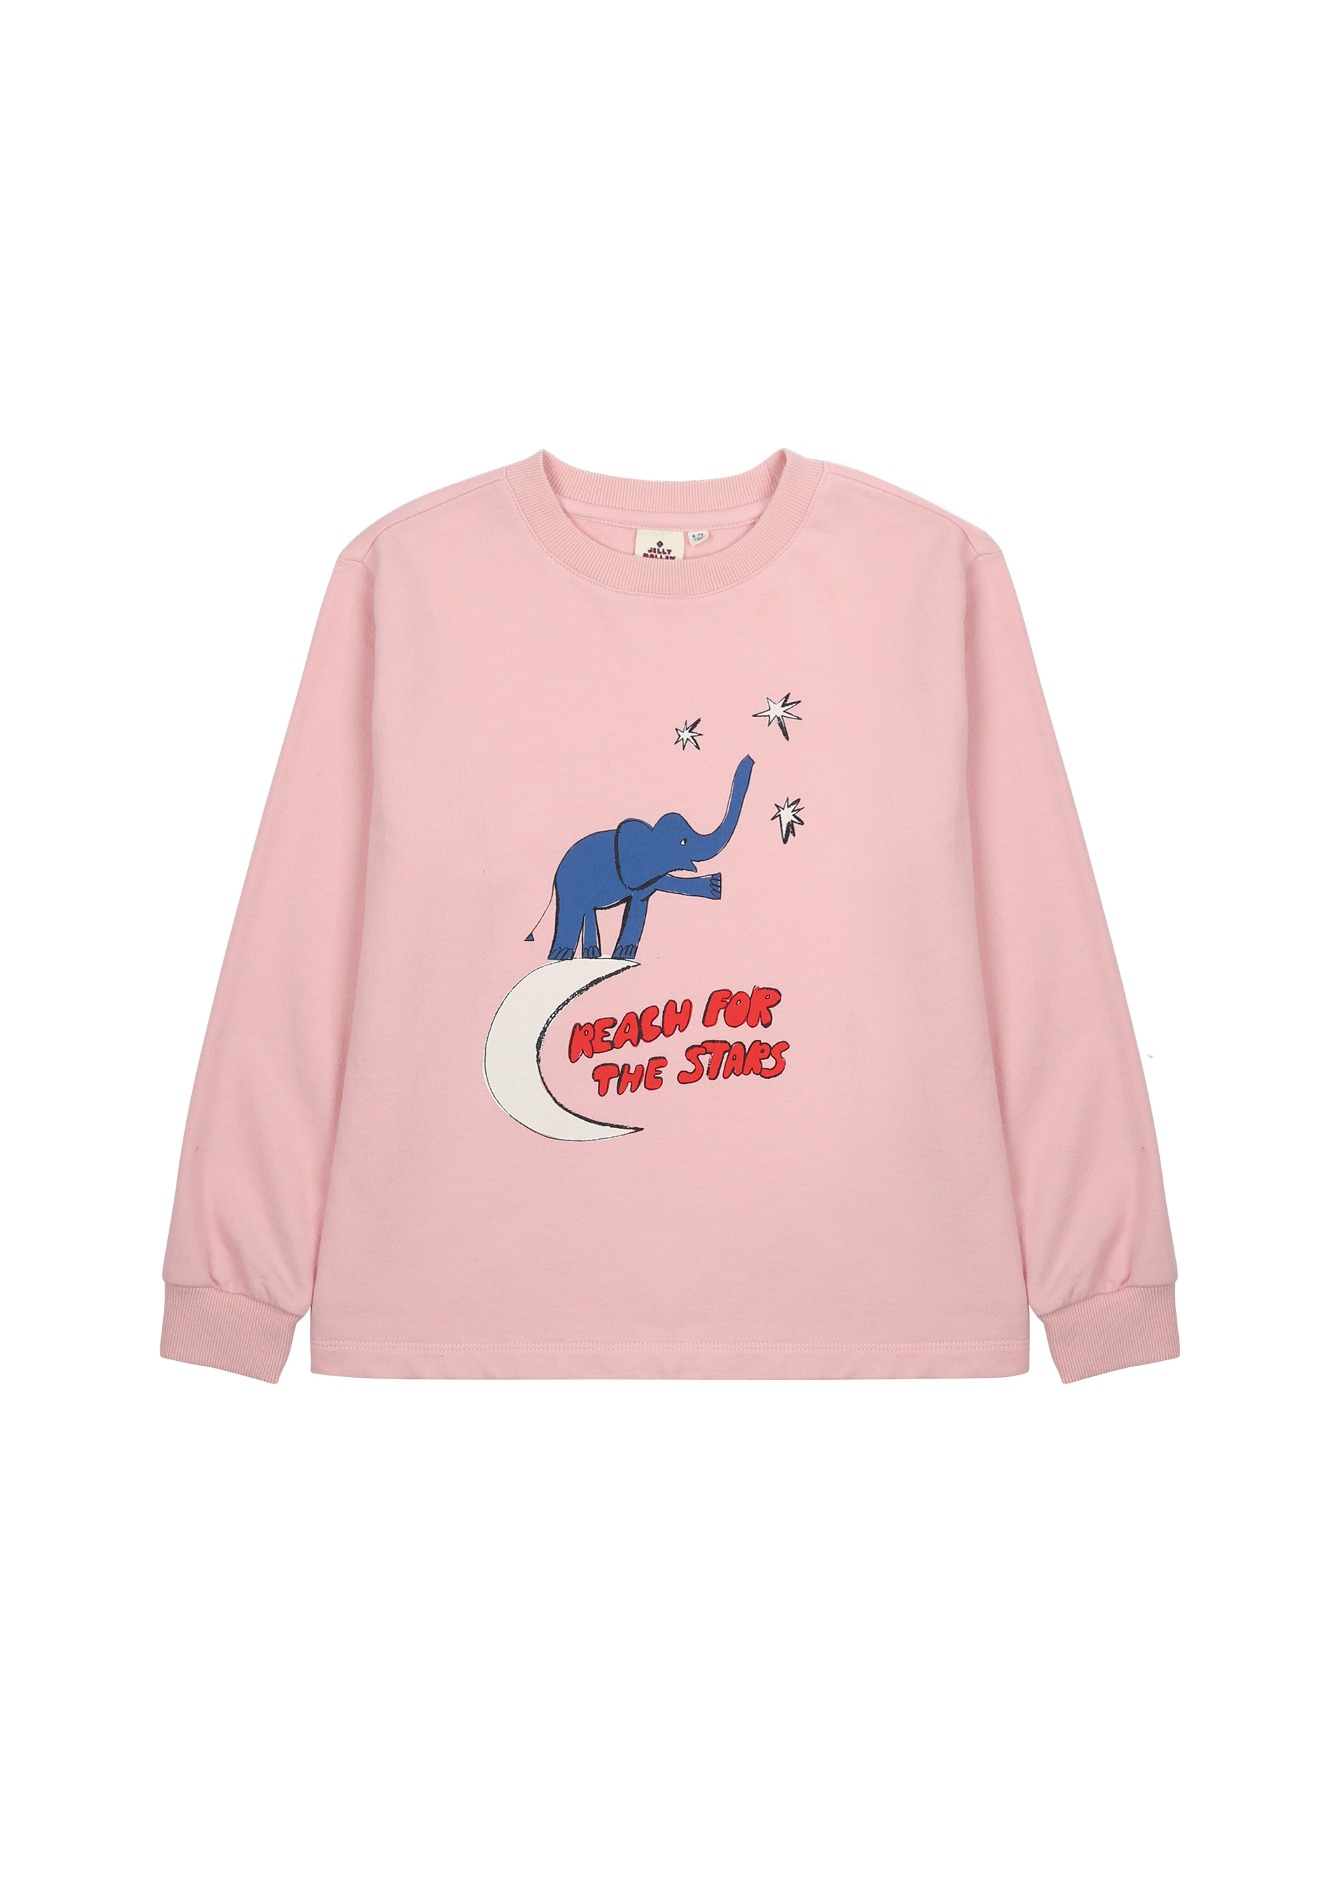 코끼리 롱 슬리브 티셔츠_핑크